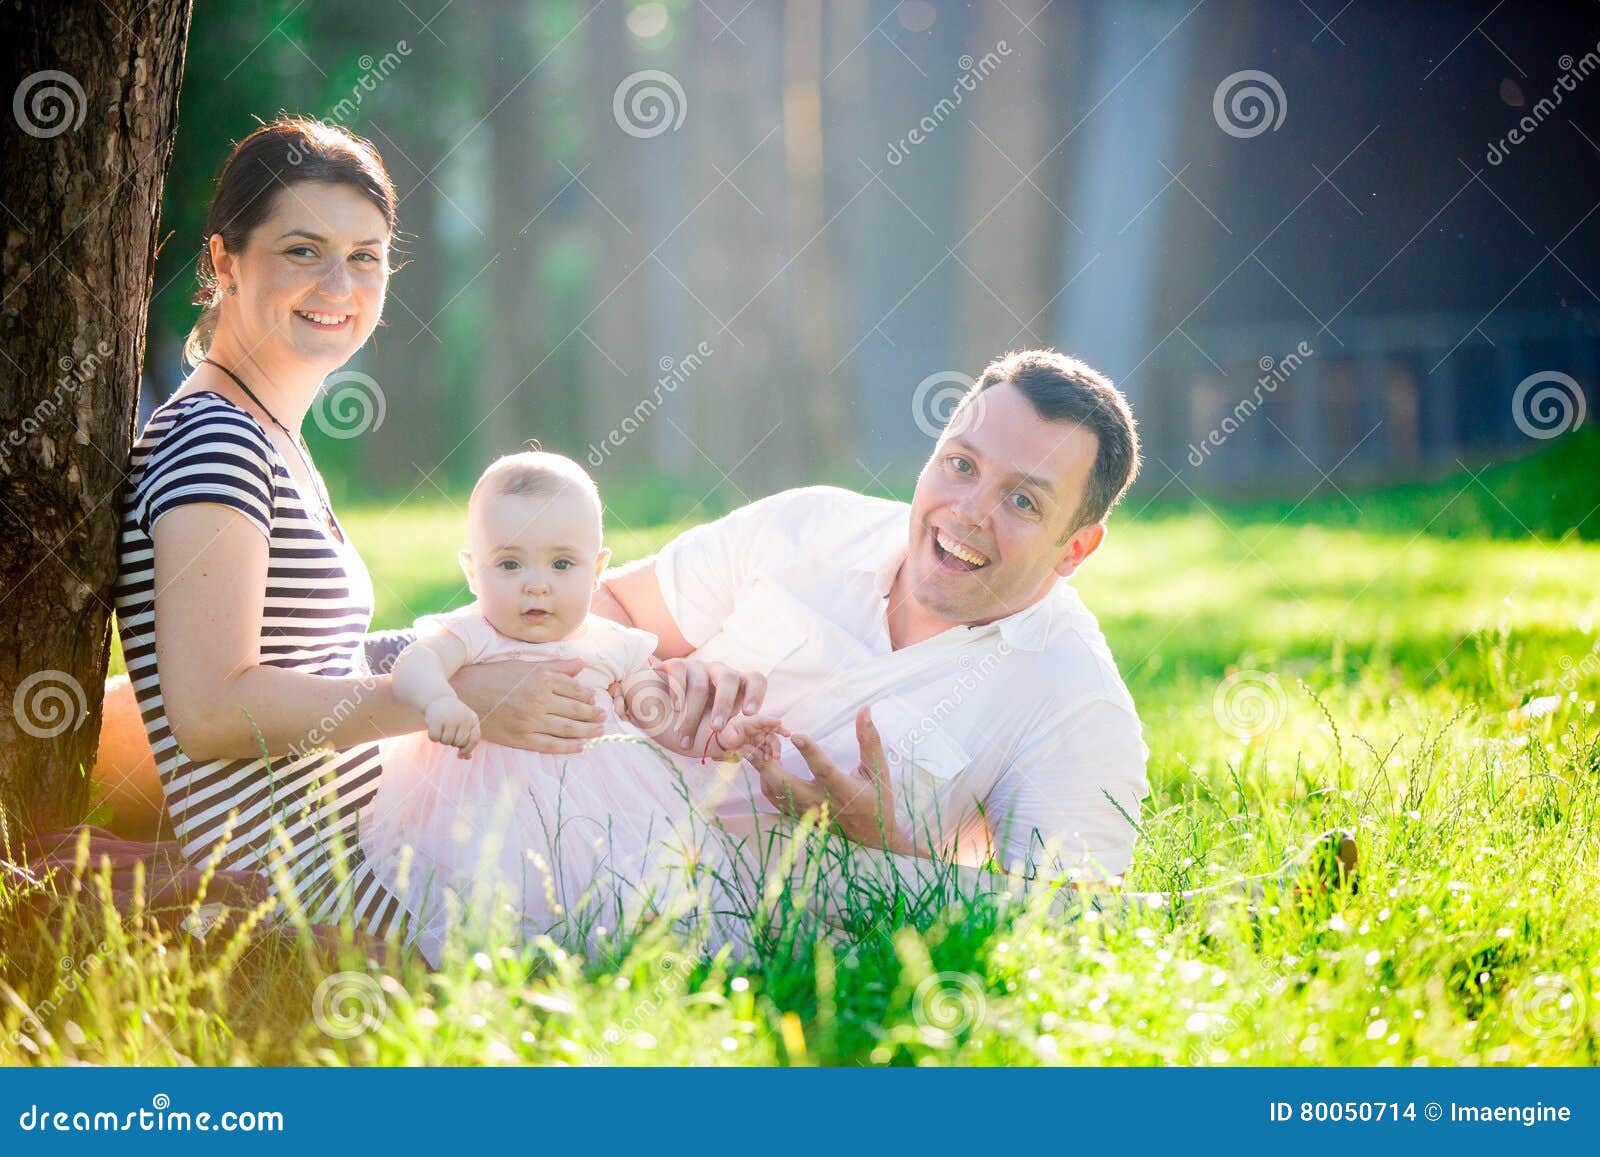 Portrait heureux de Familly. Beau petit bébé s'asseyant sur l'herbe verte d'un pré ensoleillé avec sa maman et papa